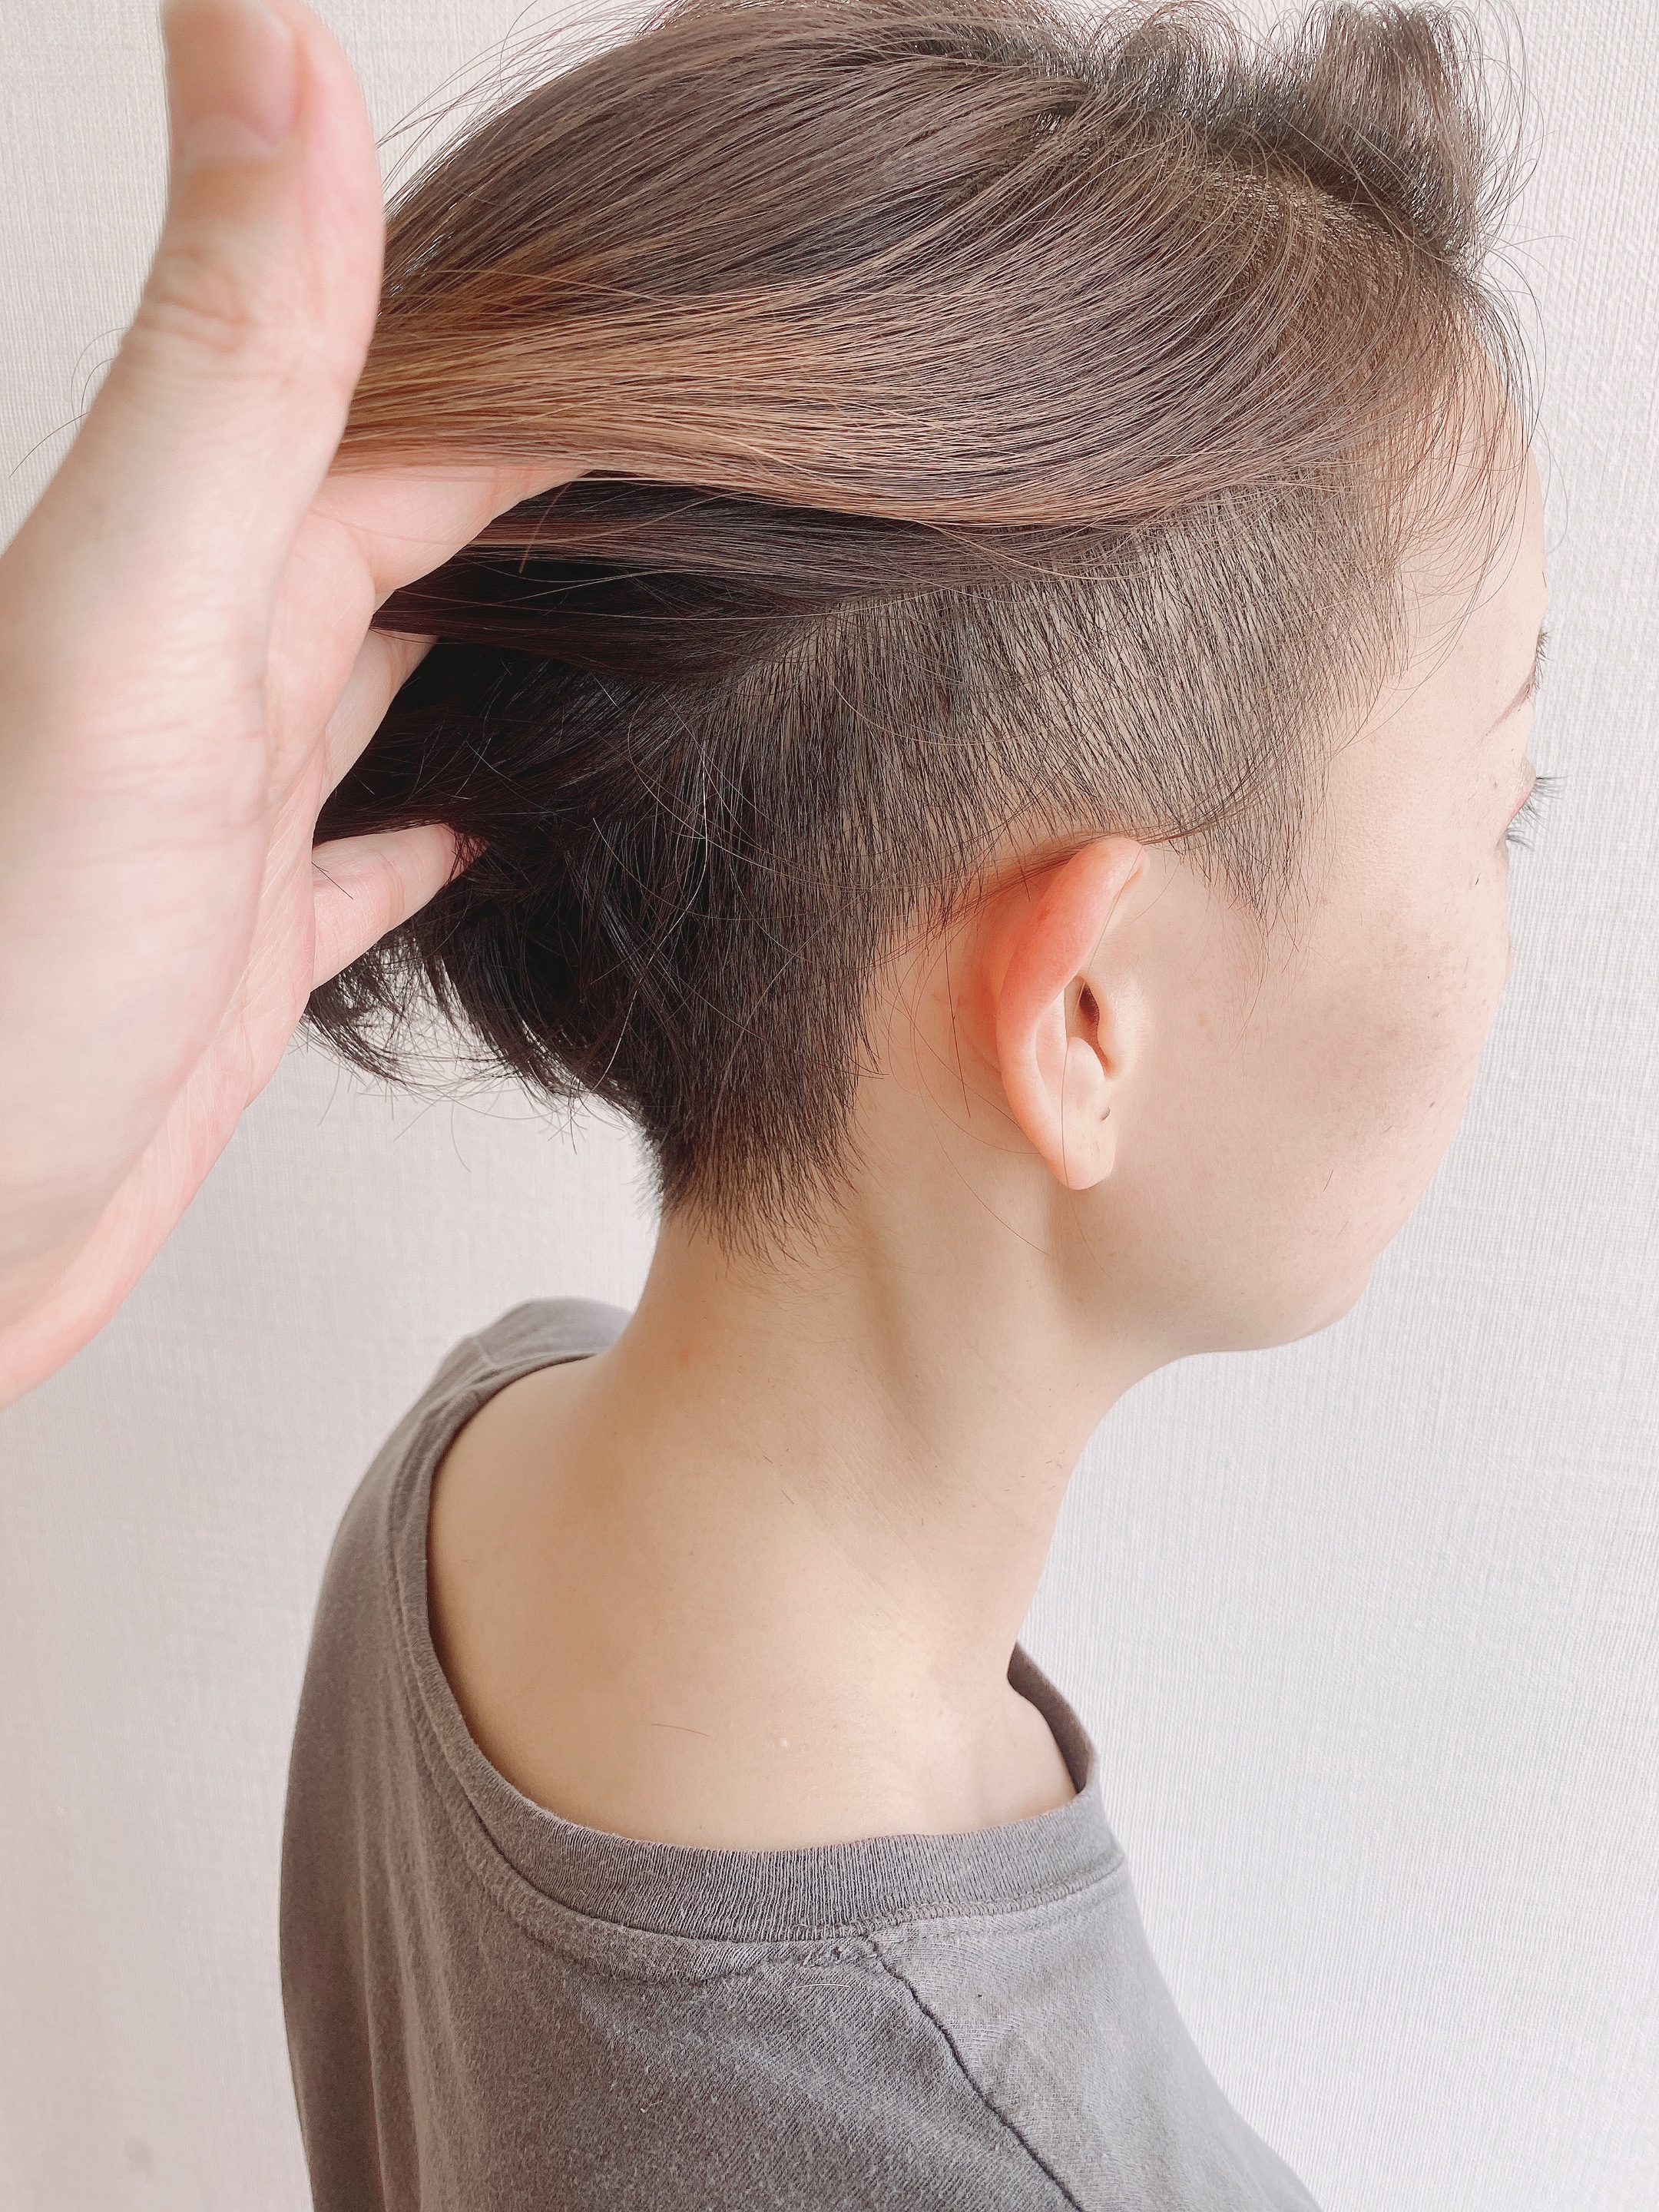 女性でも らしさ を求めて欲しい 夏木マリさんの刈り上げヘア風にツーブロックボブが可愛い 総社市 美容室ルチア 30代 40代 50代の髪の悩み解消